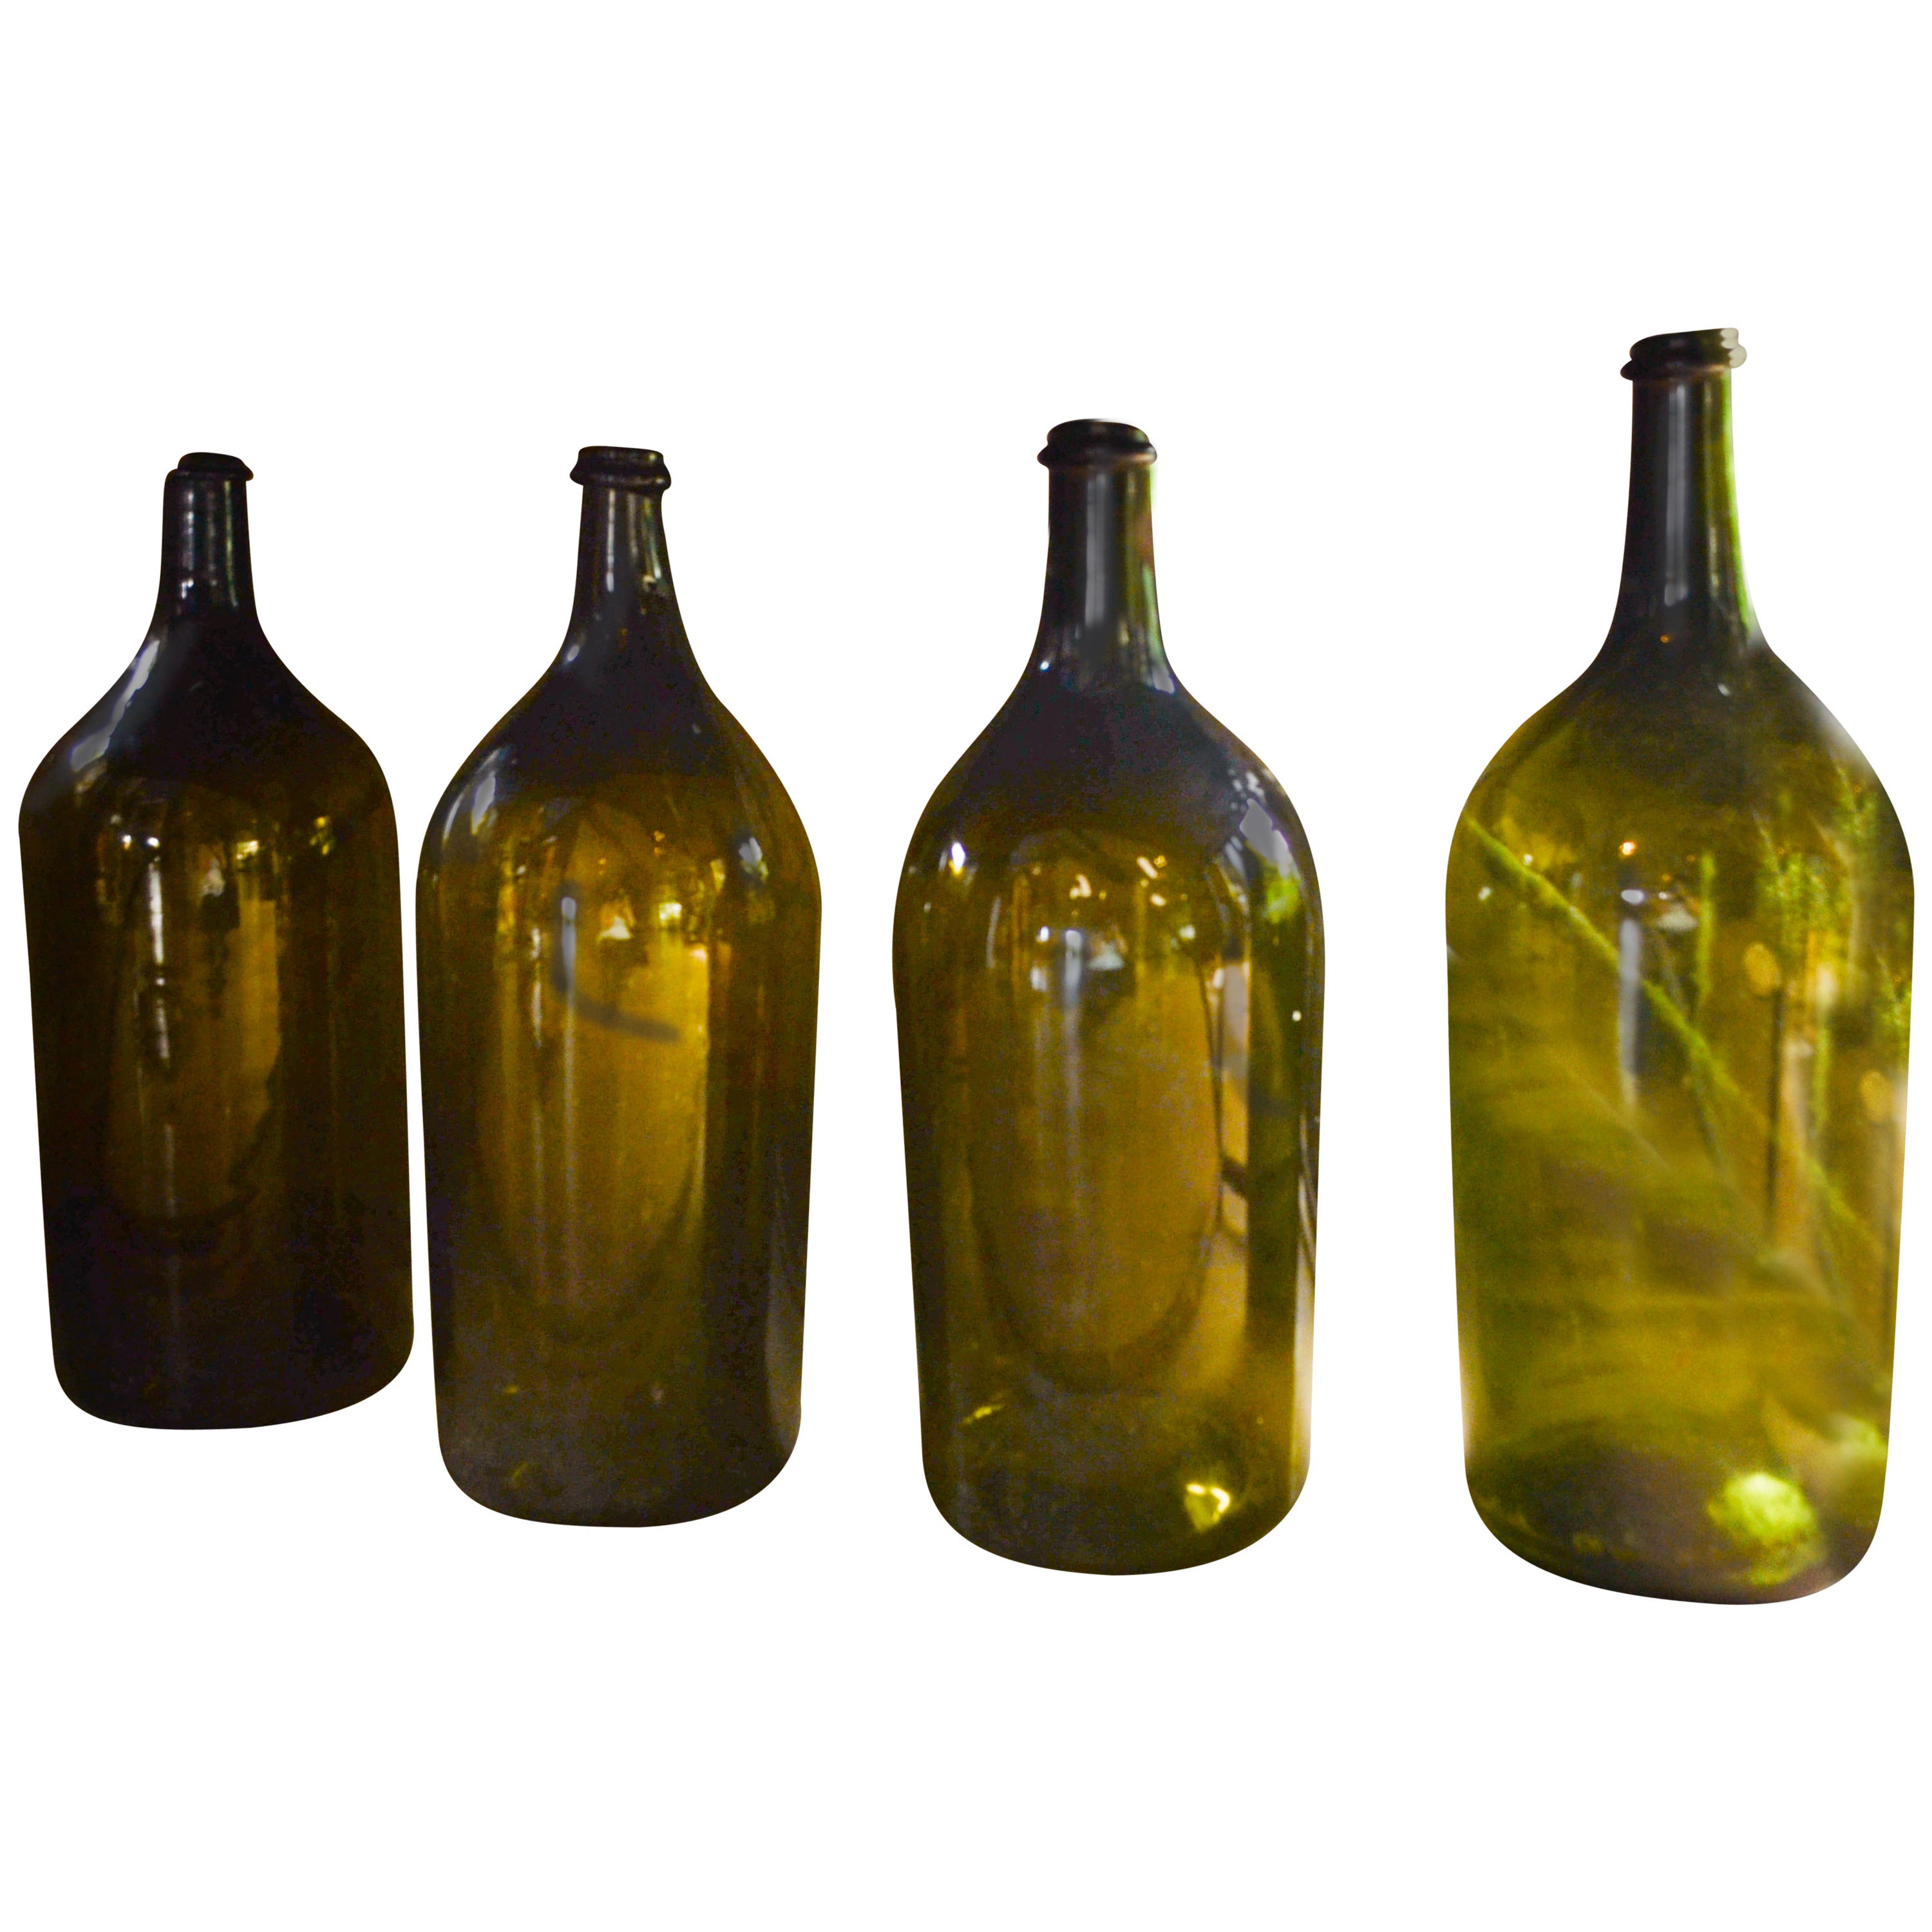 Vintage Glass Large Format Bottles, France, circa 1860